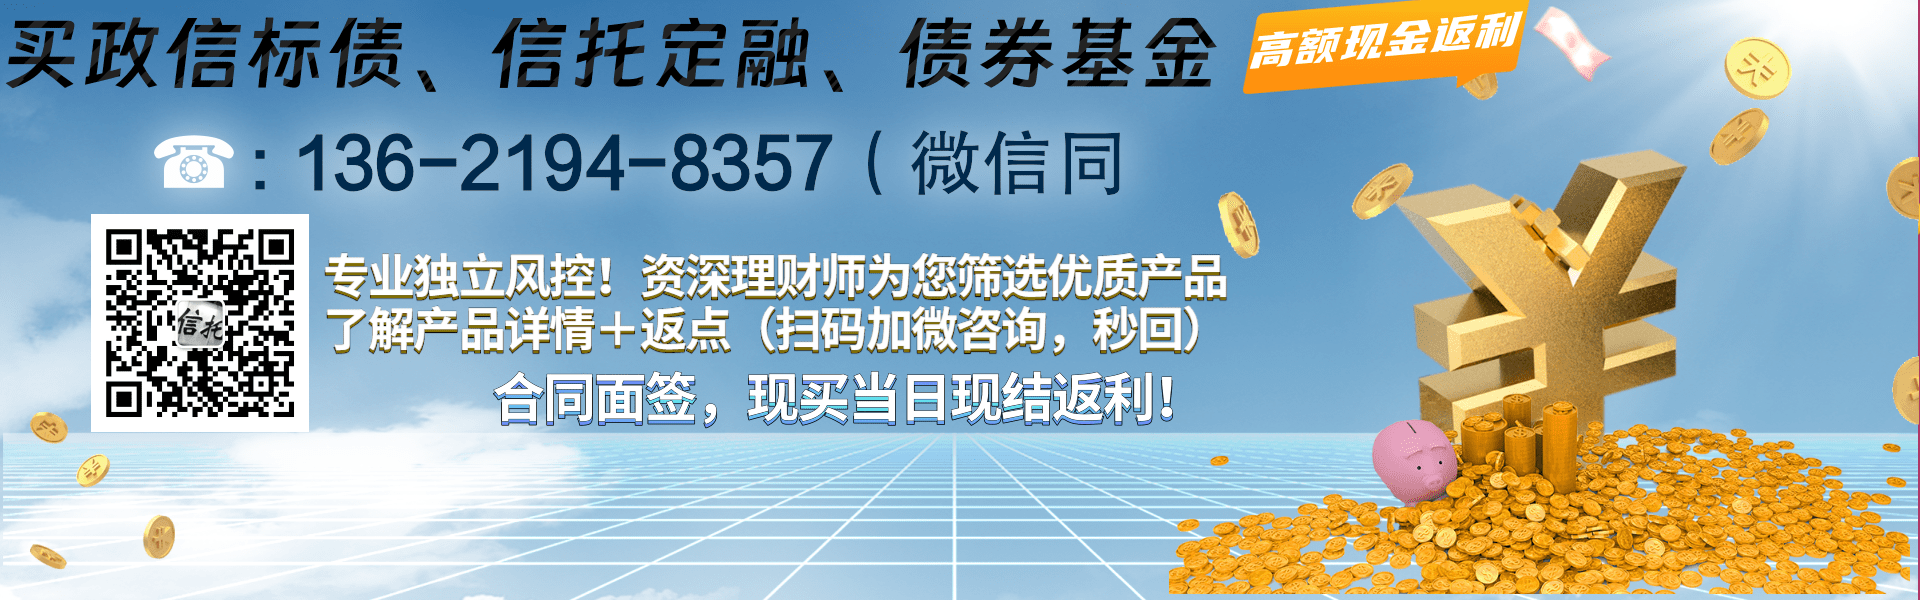 山东ZZ老城工业资产运营2023年财产权信托二期城投债定融